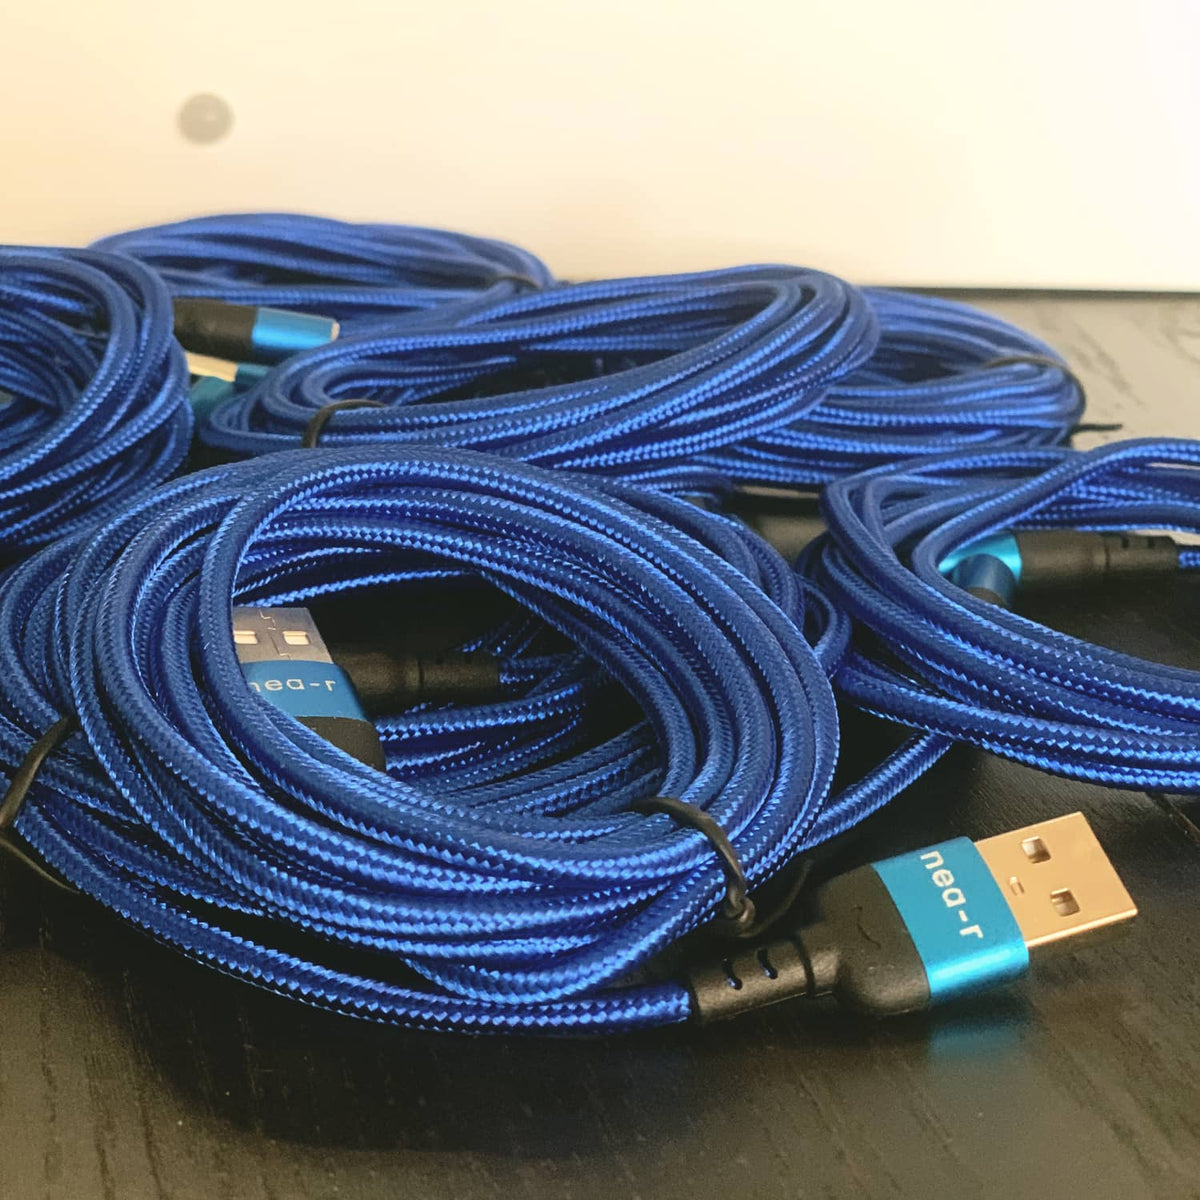 Oferta do cabo de carregamento USB de 2 metros na compra da moldura nea-r.